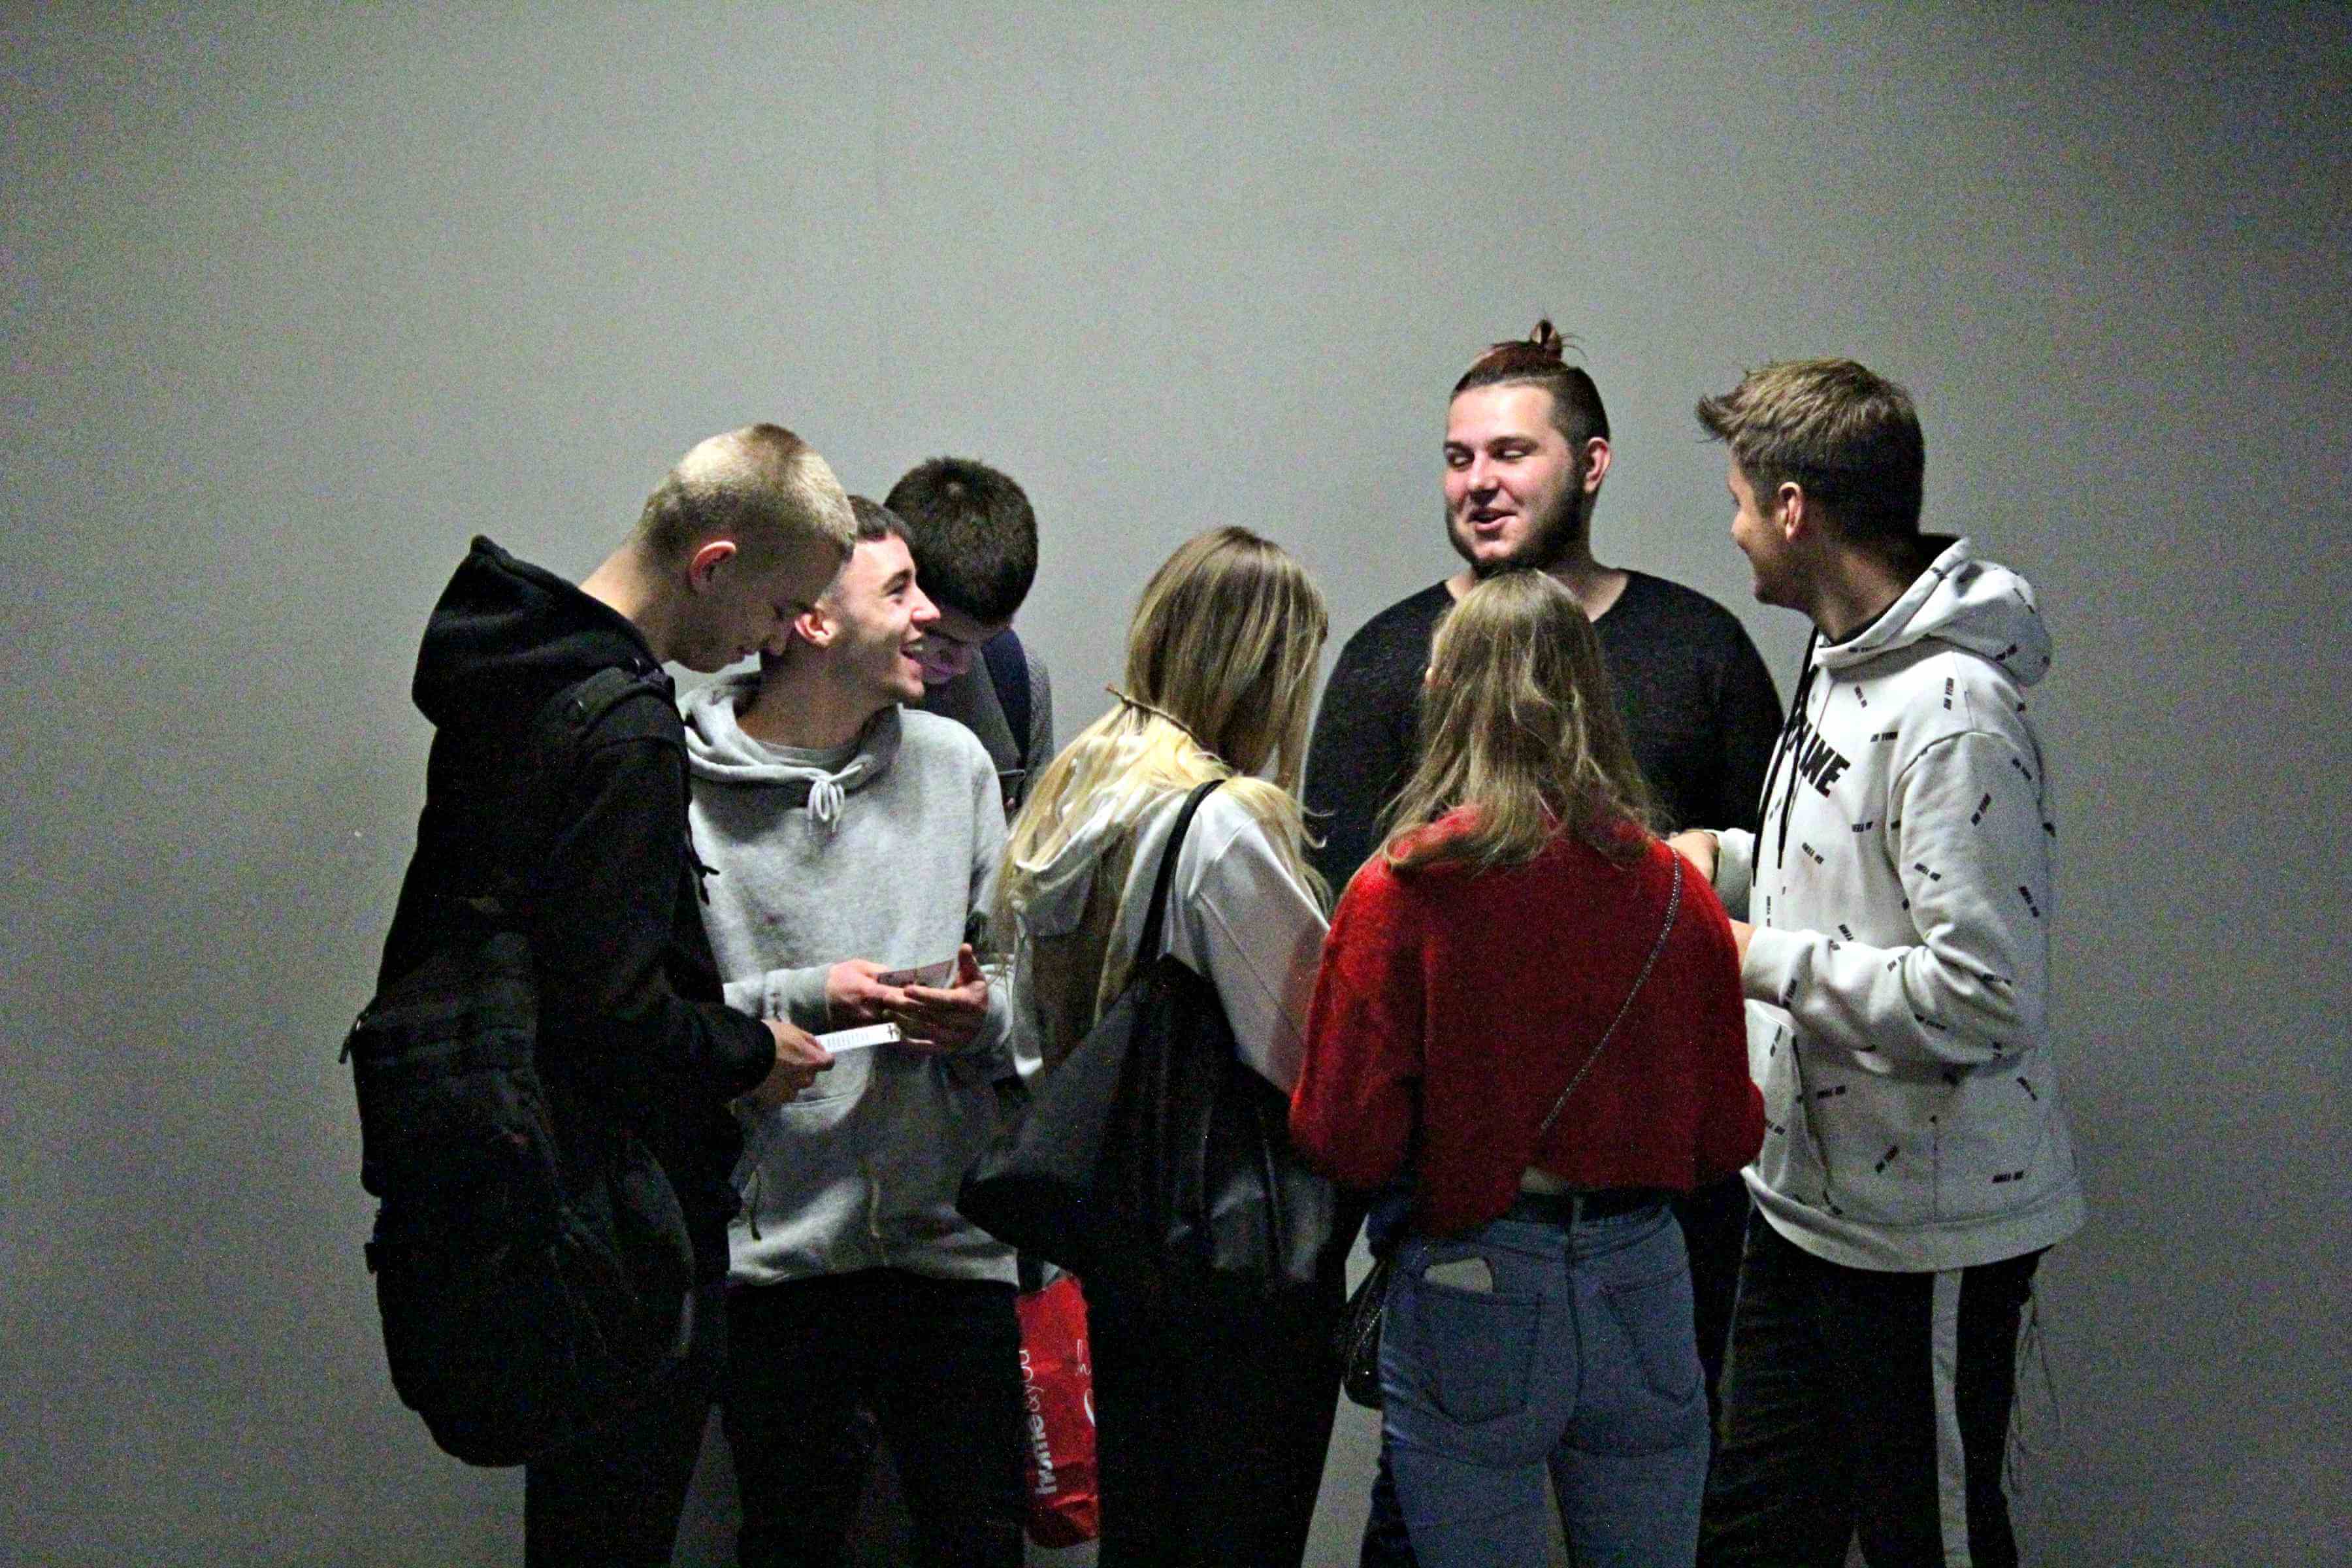 grupa młodych ludzi stoi na środku kadru na tle szarej ściany, po prawej chłopak ubrany na czarno w bluzie z kapturem i czarnym plecakiem na prawym ramieniu, obok niego chłopak w szarej bluzie z kaprurem i czarnych spodniach, za nim chłopak w szarej bluzie z czarnym plecakiem, na środku dziewczyna z długimi blond włosami w białej bluzie z kapturem, z czarną torebką na prawym ramieniu, ma czarne spodnie, obok niej dziewczyna w czerwonej bluzie i jasnych jeansach, za nią chłopak w czarnek koszulce, obok niego chłopak w biało czarnej bluzie z kapturem i czarnych spodniach z białym lampasem,